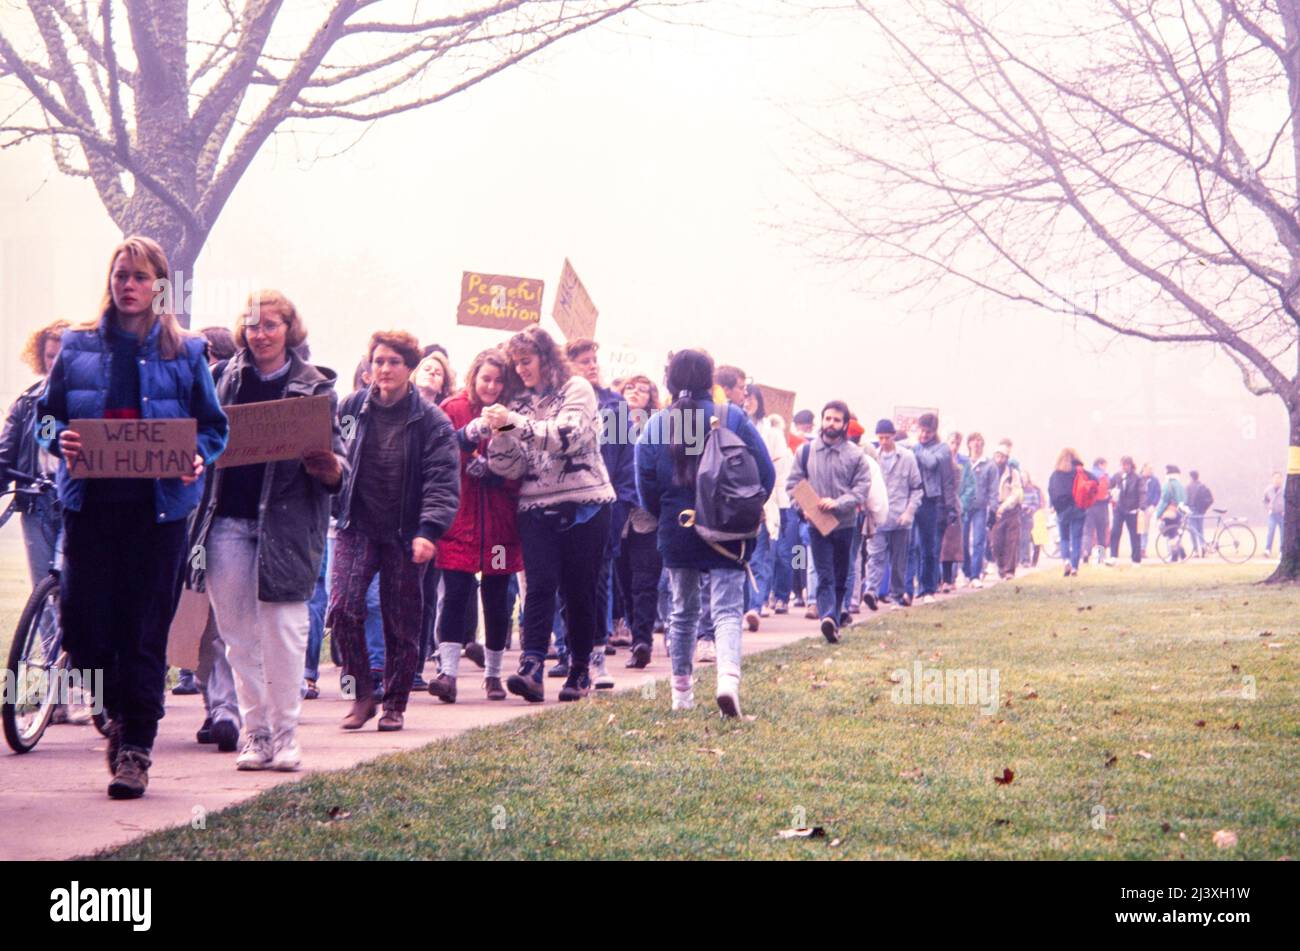 Manifestation pacifique contre la guerre par des étudiants de l'université d'État de l'Oregon en réponse au lancement américain de l'opération tempête du désert en janvier 1991, en opposition à Saddam Hussein et à l'invasion du Koweït par l'Iraq Banque D'Images